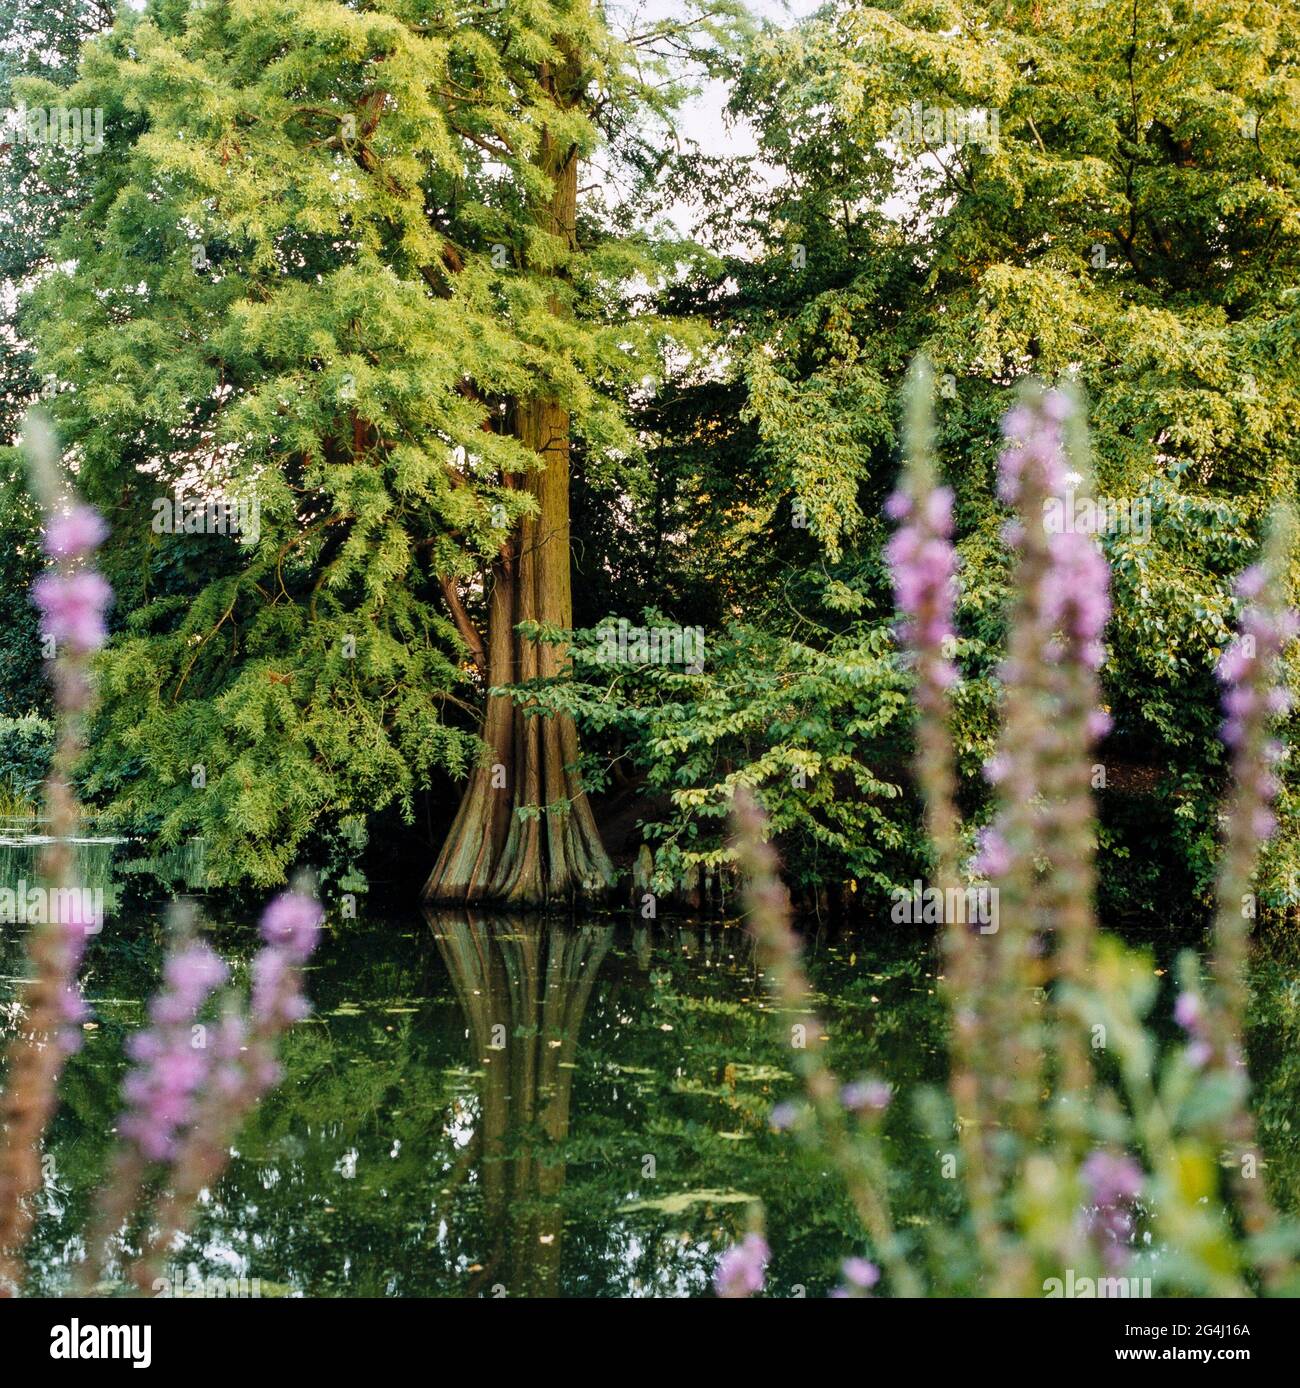 GREAT BRITAIN / England / London / Royal Botanic Gardens Kew /Lake in Kew Garden. Stock Photo